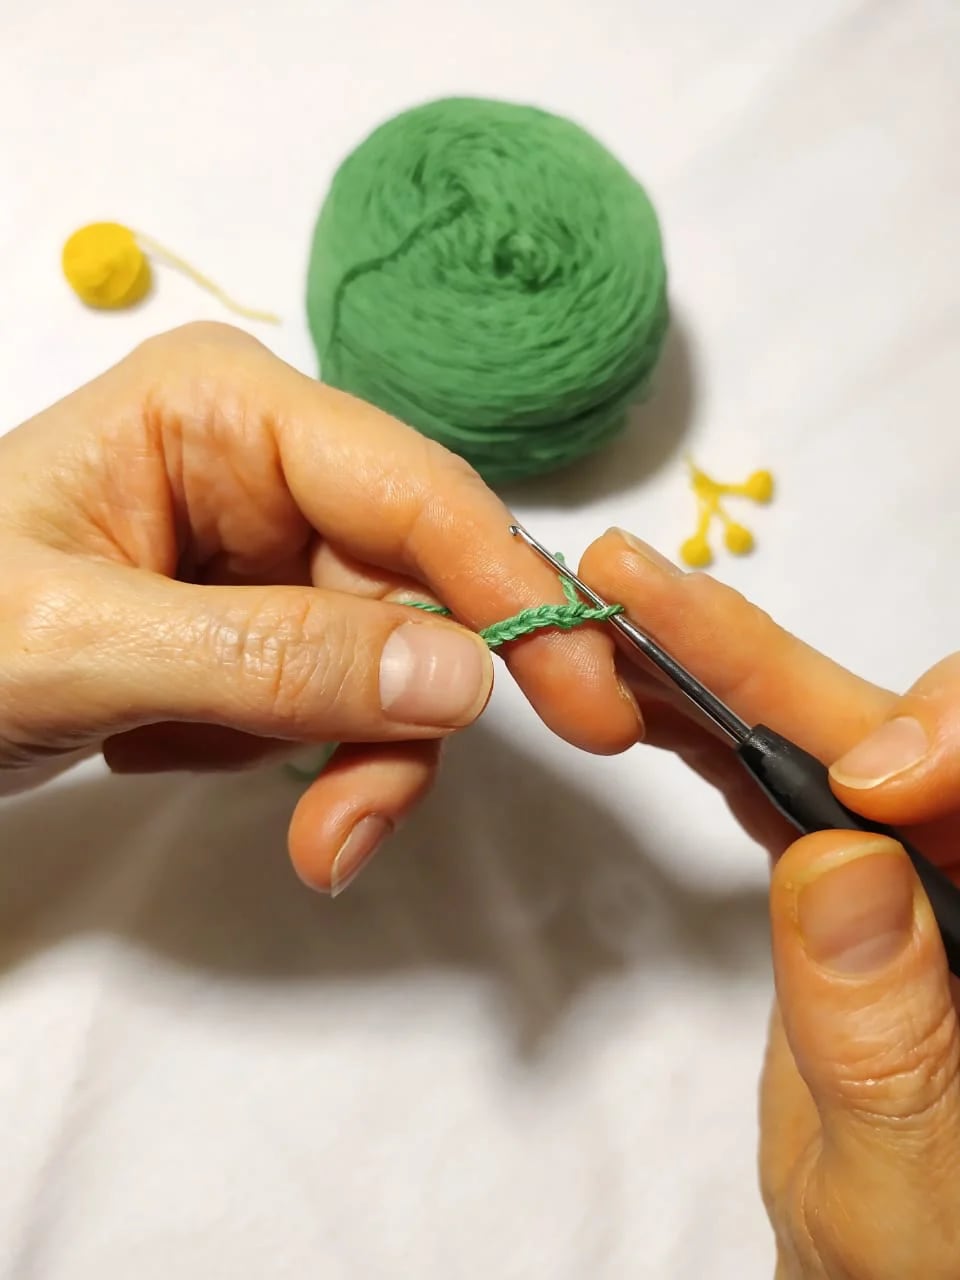 "Me gusta el crochet chiquito, hacer accesorios y brindarles una utilidad", cuenta la tejedora belga